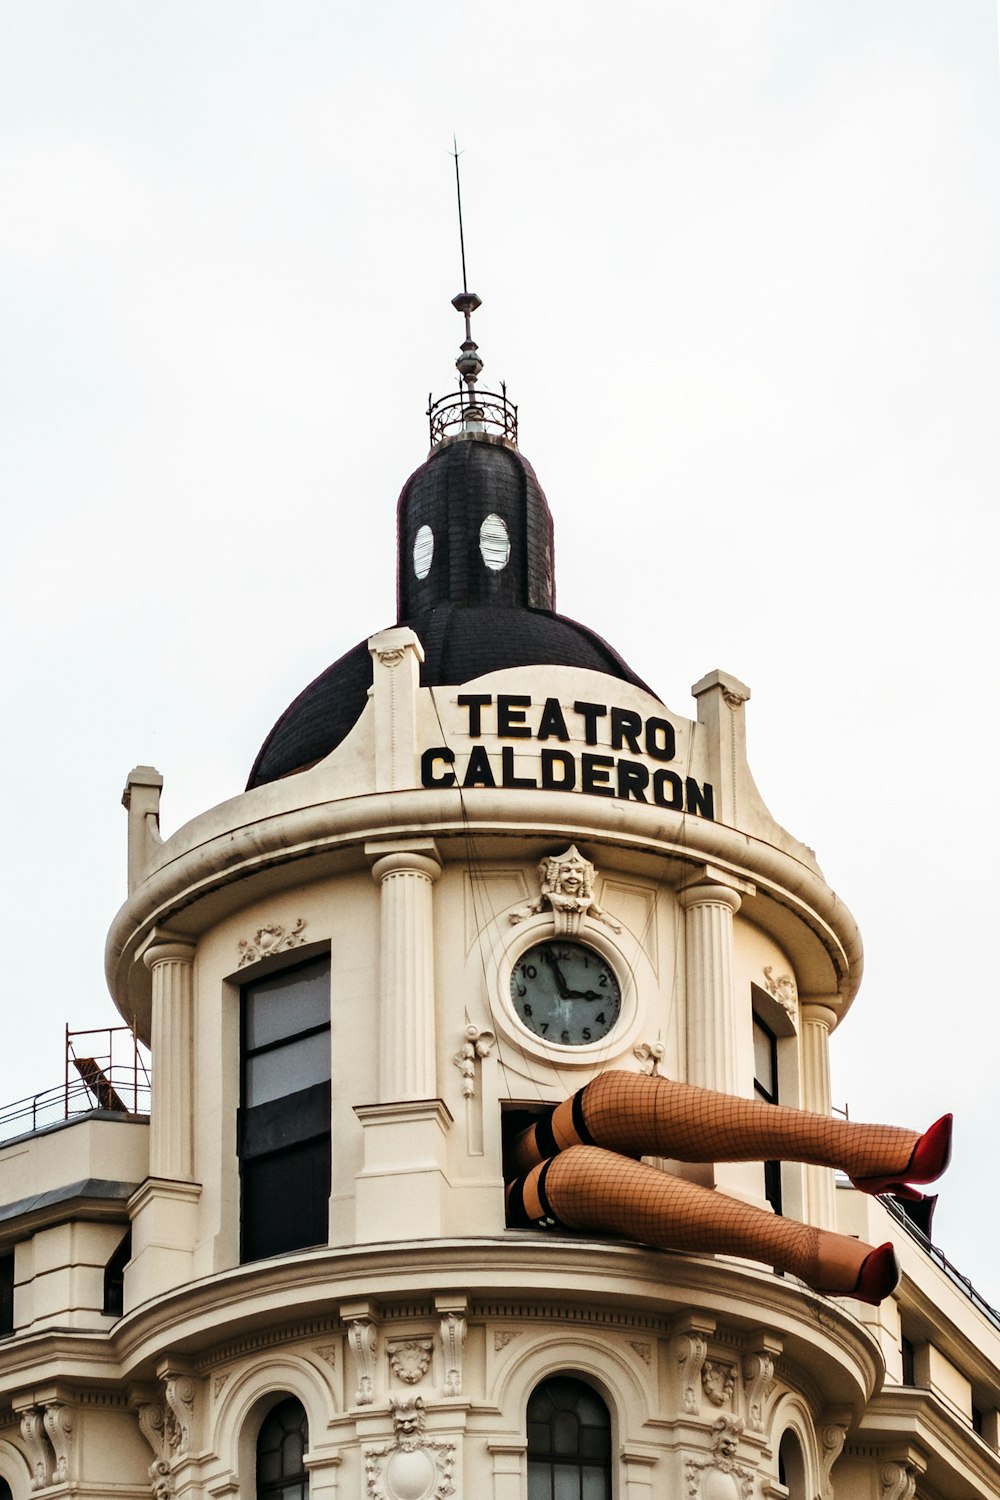 Teatro Calderon, Madrid during day